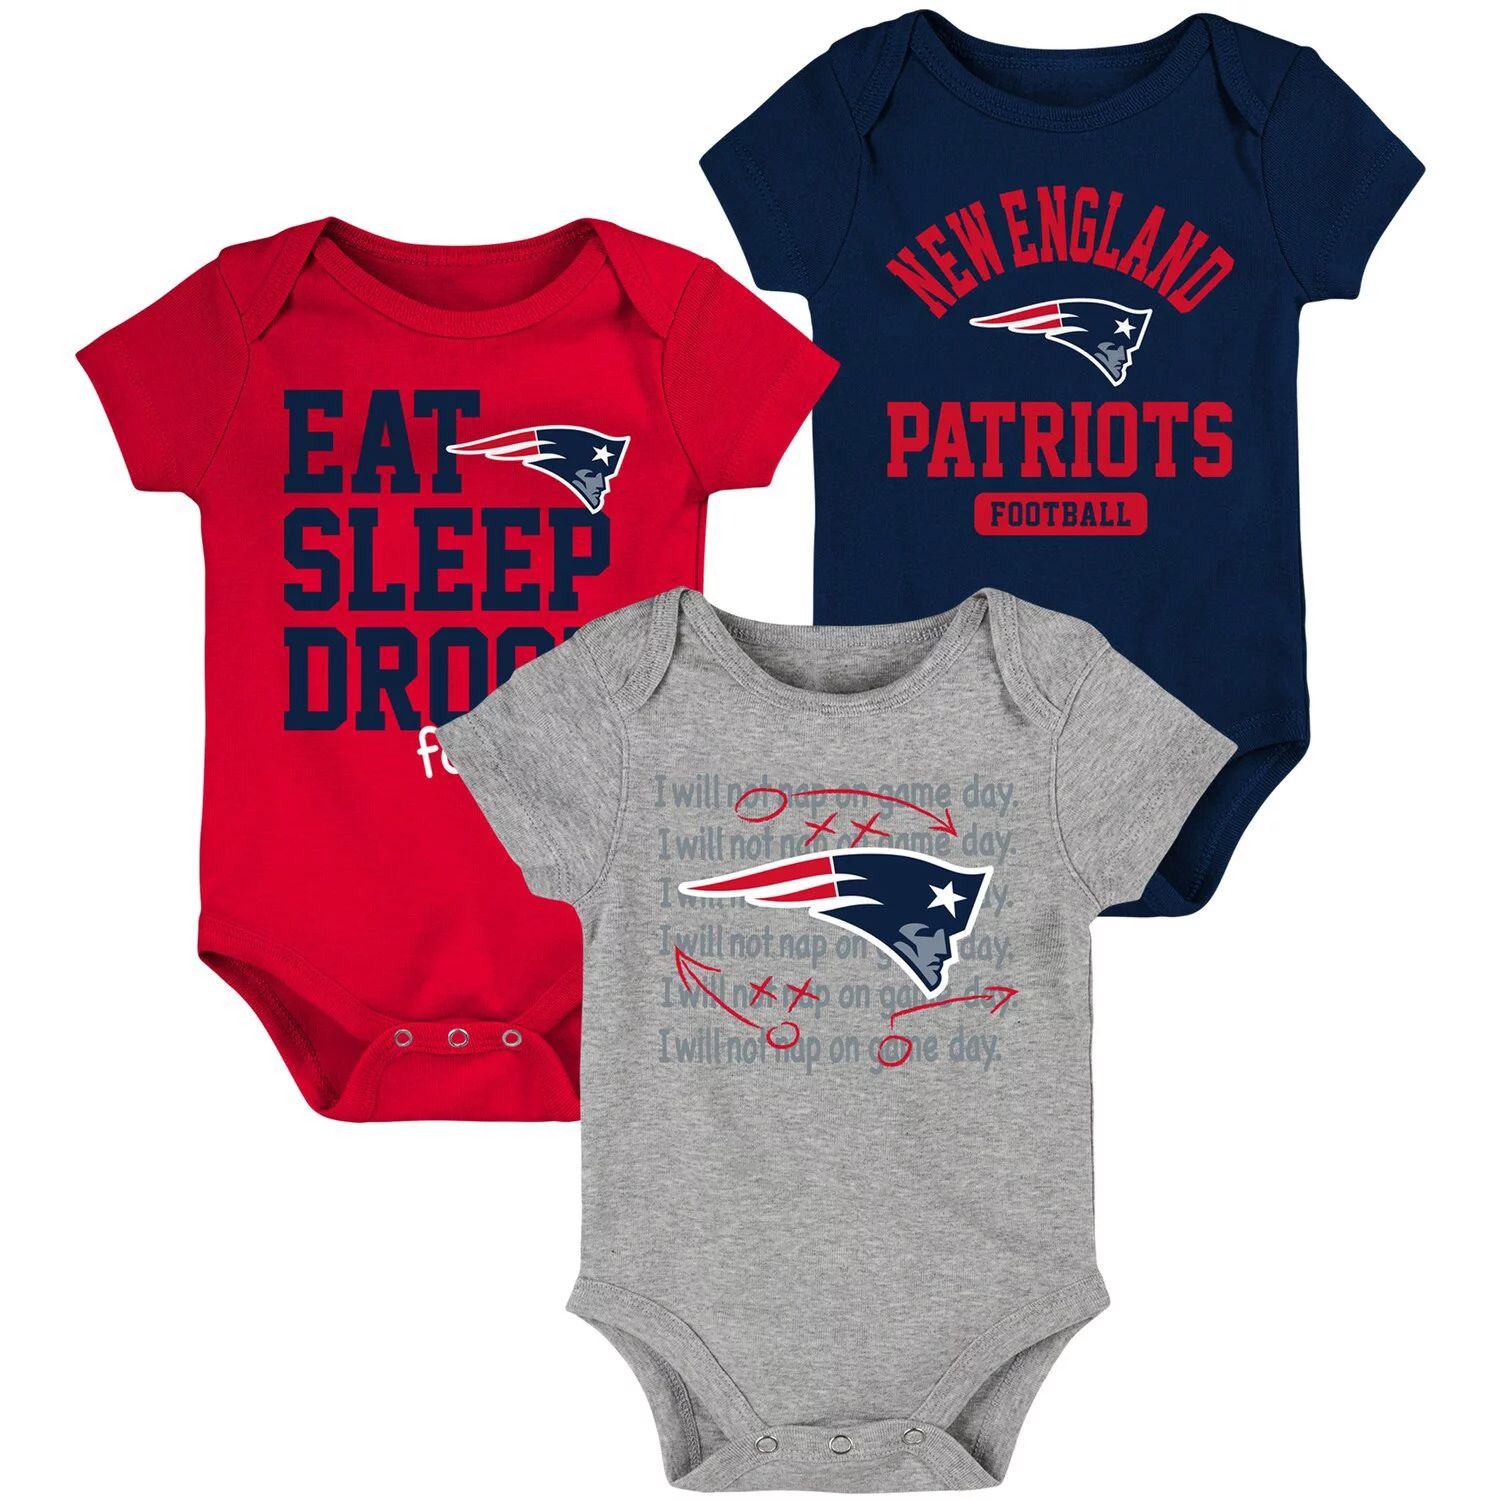 Комплект боди из трех частей темно-синего/красного цвета для новорожденных и младенцев New England Patriots Eat Sleep Drool Football Outerstuff